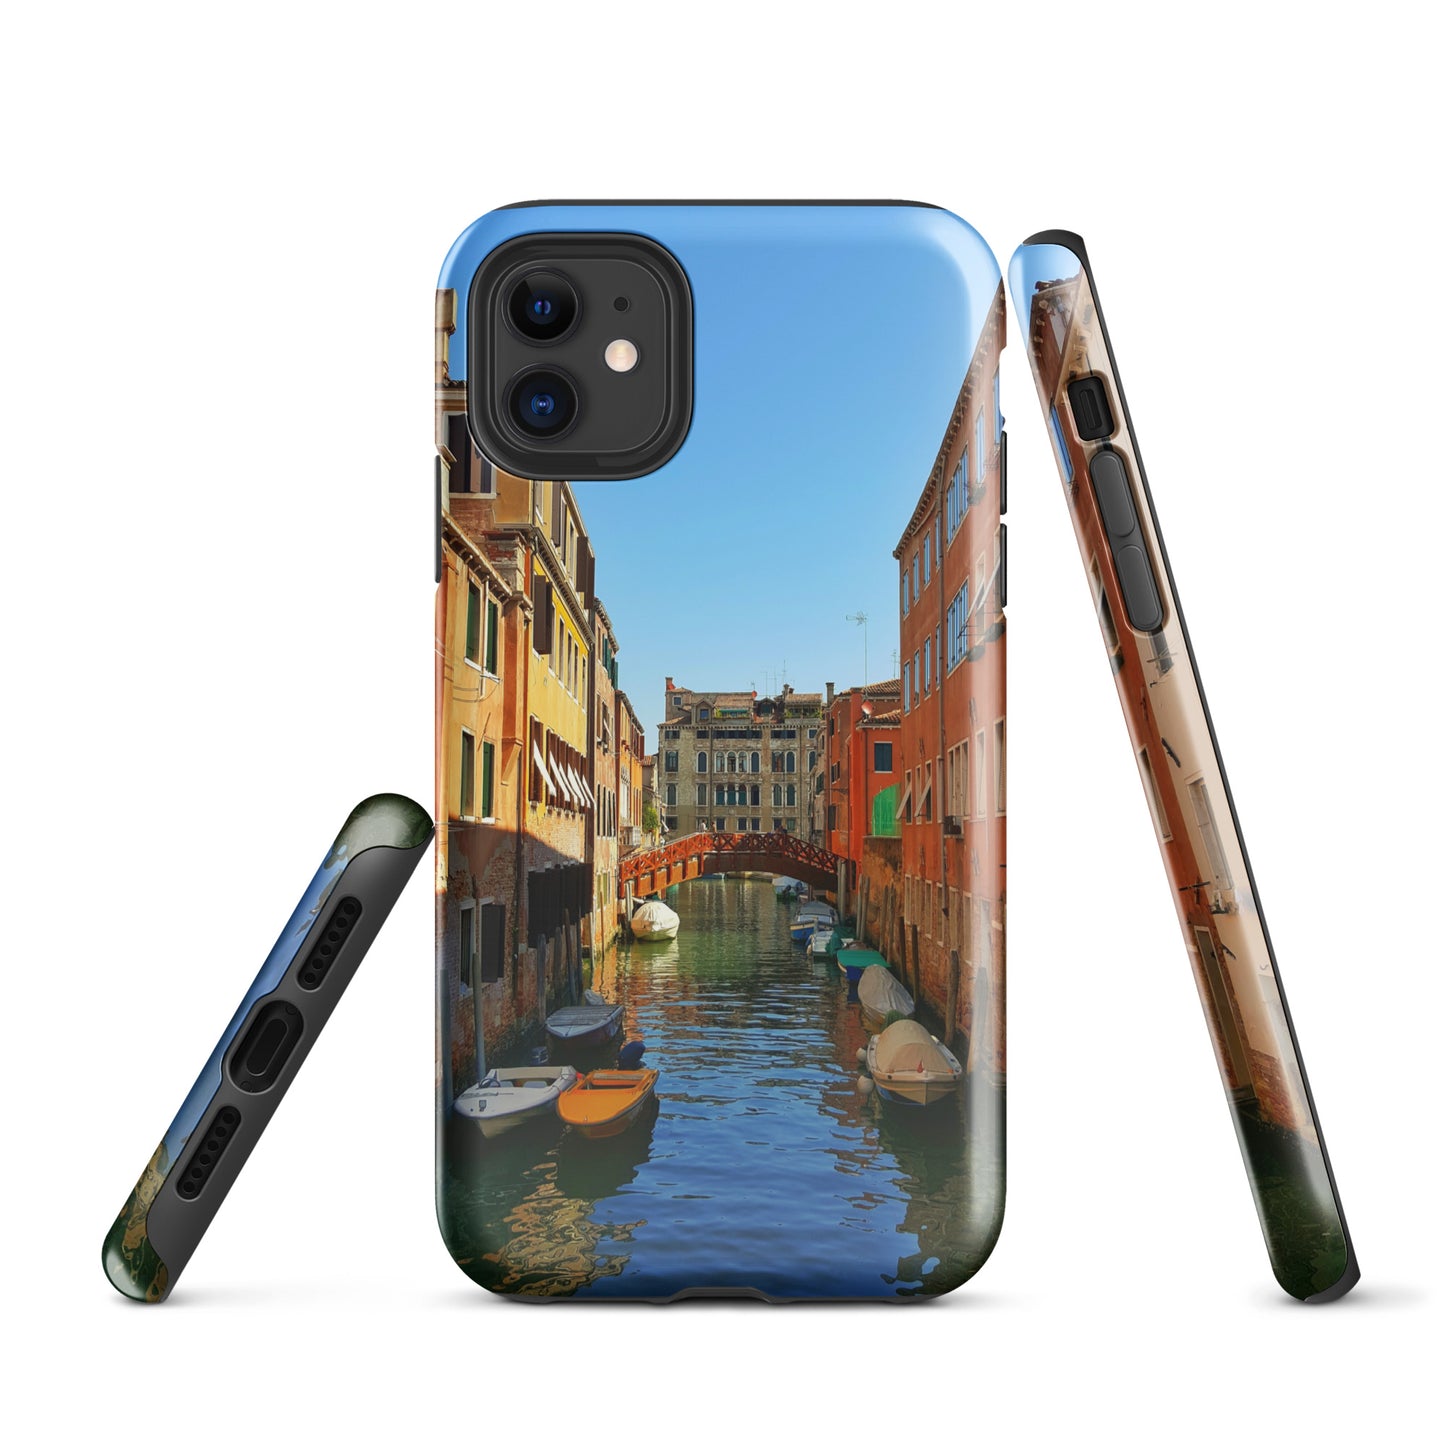 Coque Venice View Tough pour iPhone® : une protection robuste avec un paysage urbain époustouflant"